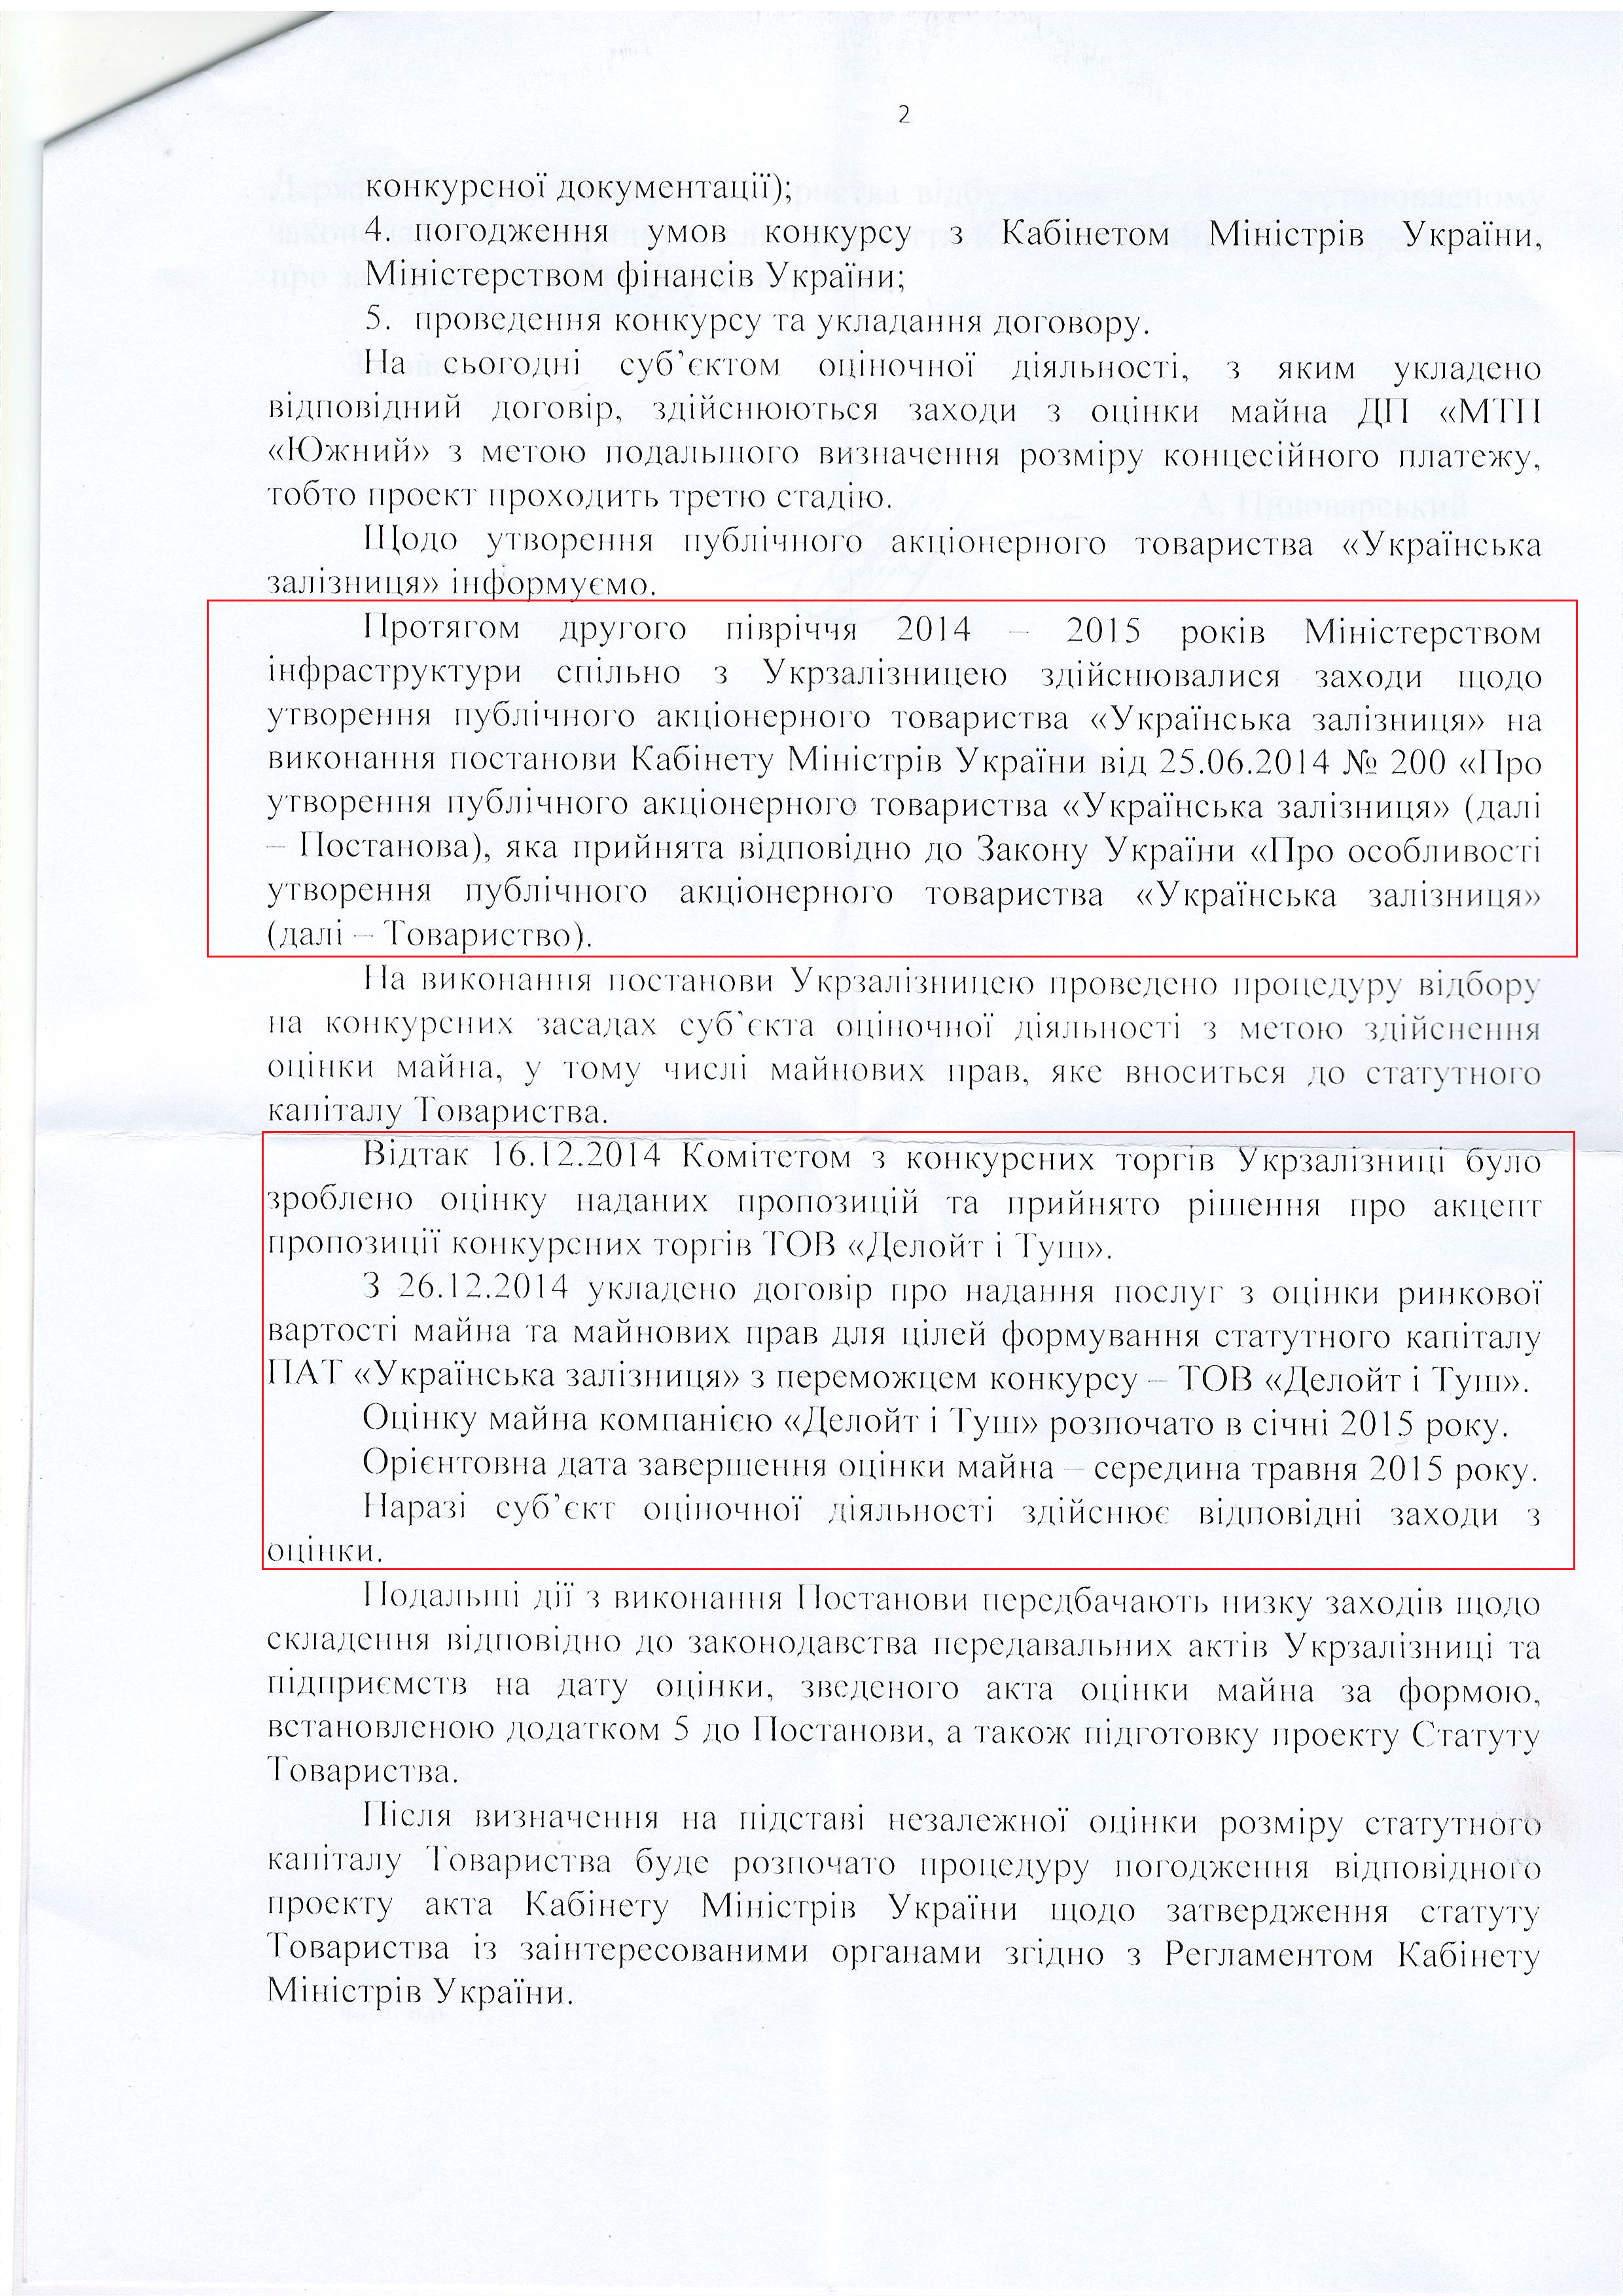 лист міністерства інфраструктури України